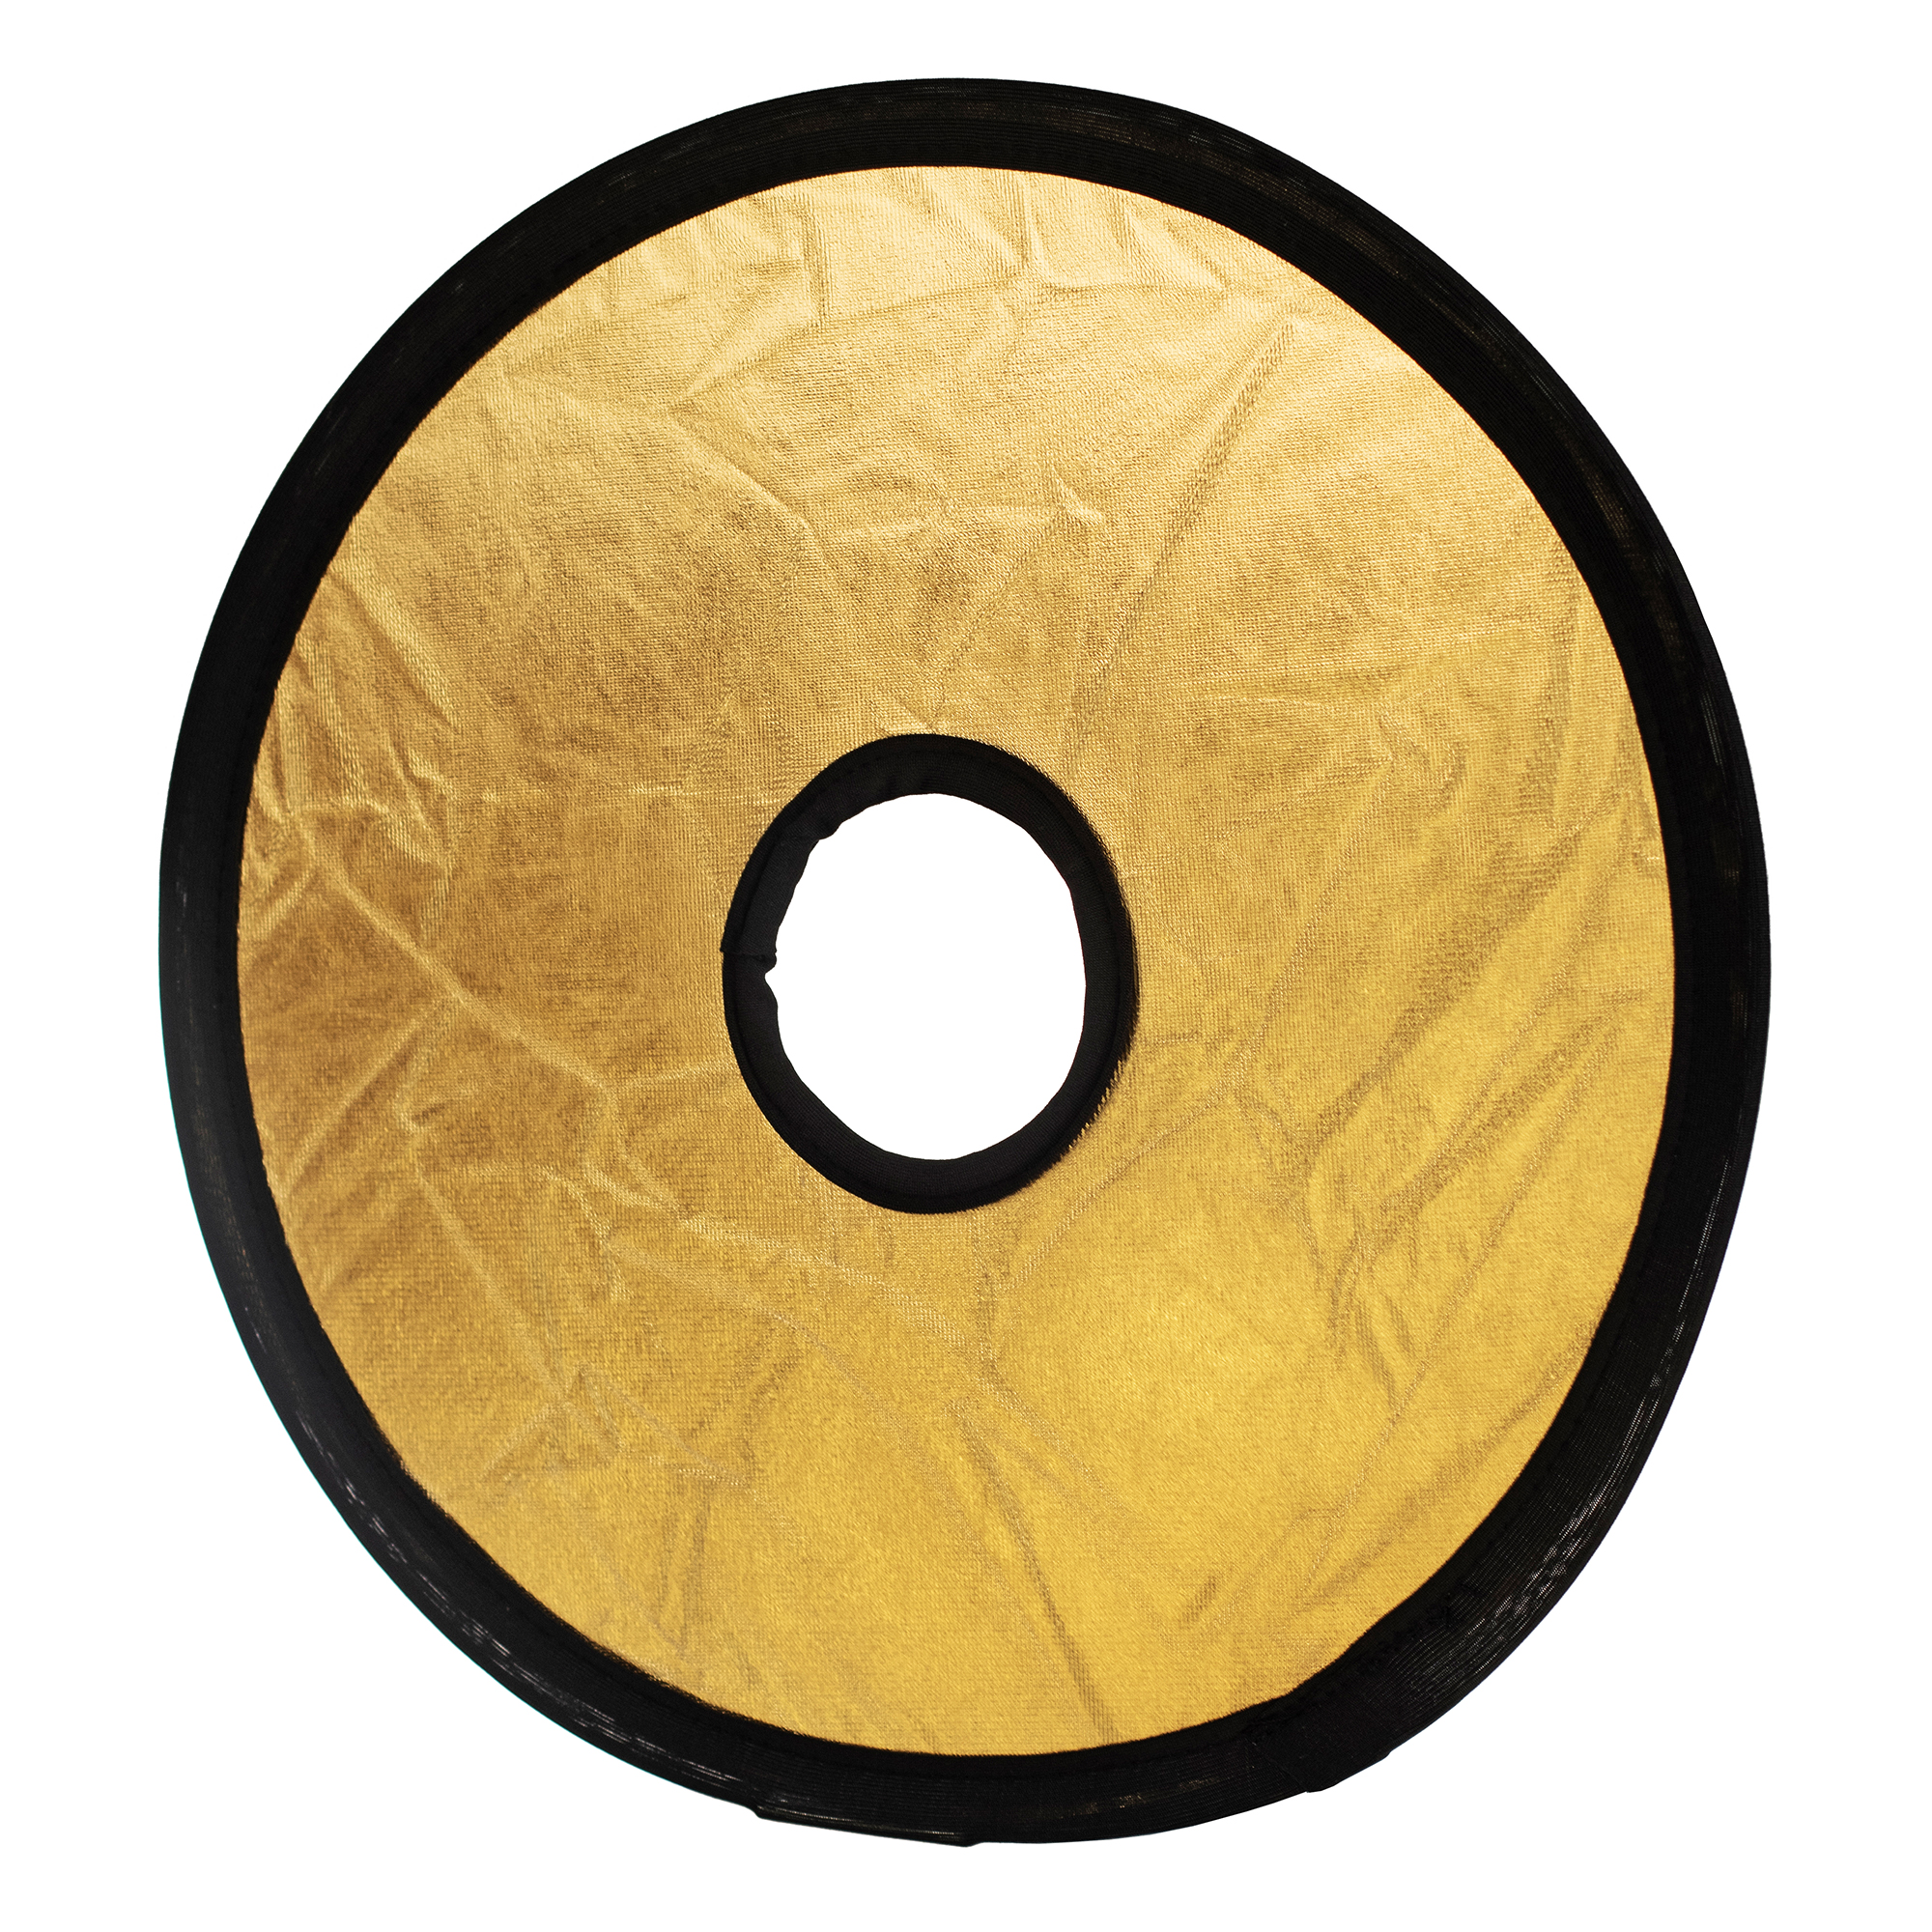 ayex 2in1 Faltreflektor Mount Lichtreflektor rund mit Objektivöffnung, Gold/Silber 30cm